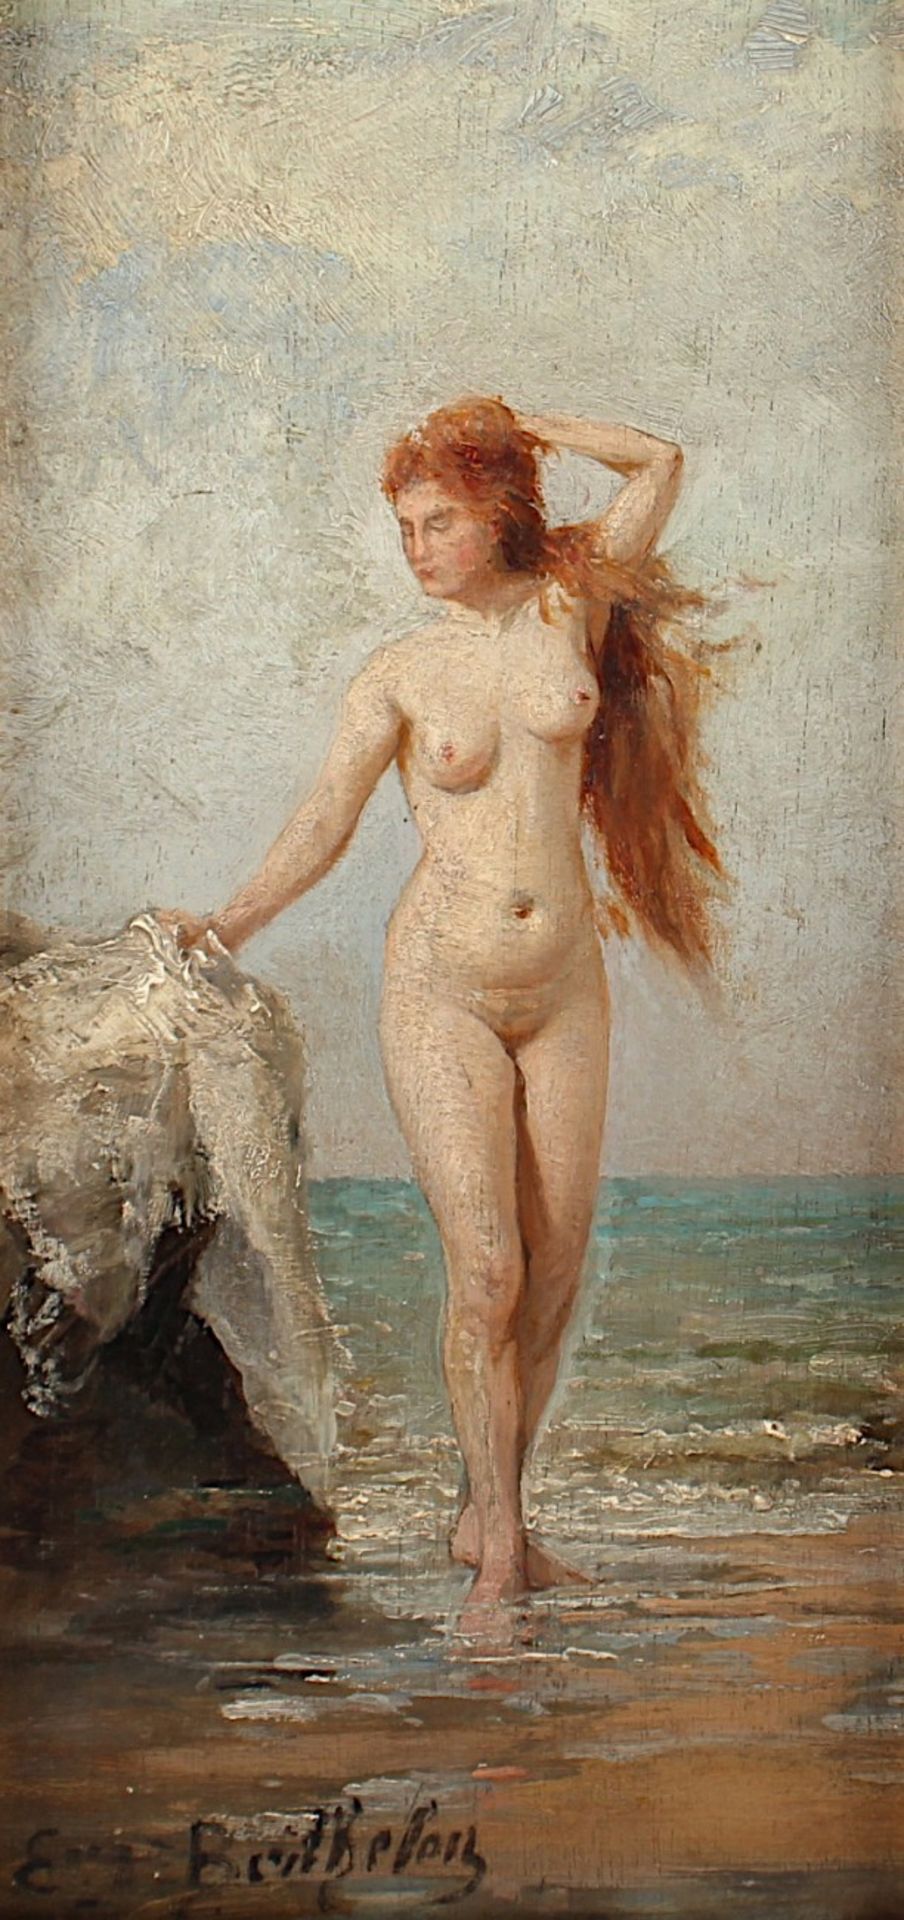 BERTHELEN, E. (Maler um 1900), "Weiblicher Akt", Öl/Holz, 24 x 11,5, unten links signiert, R.